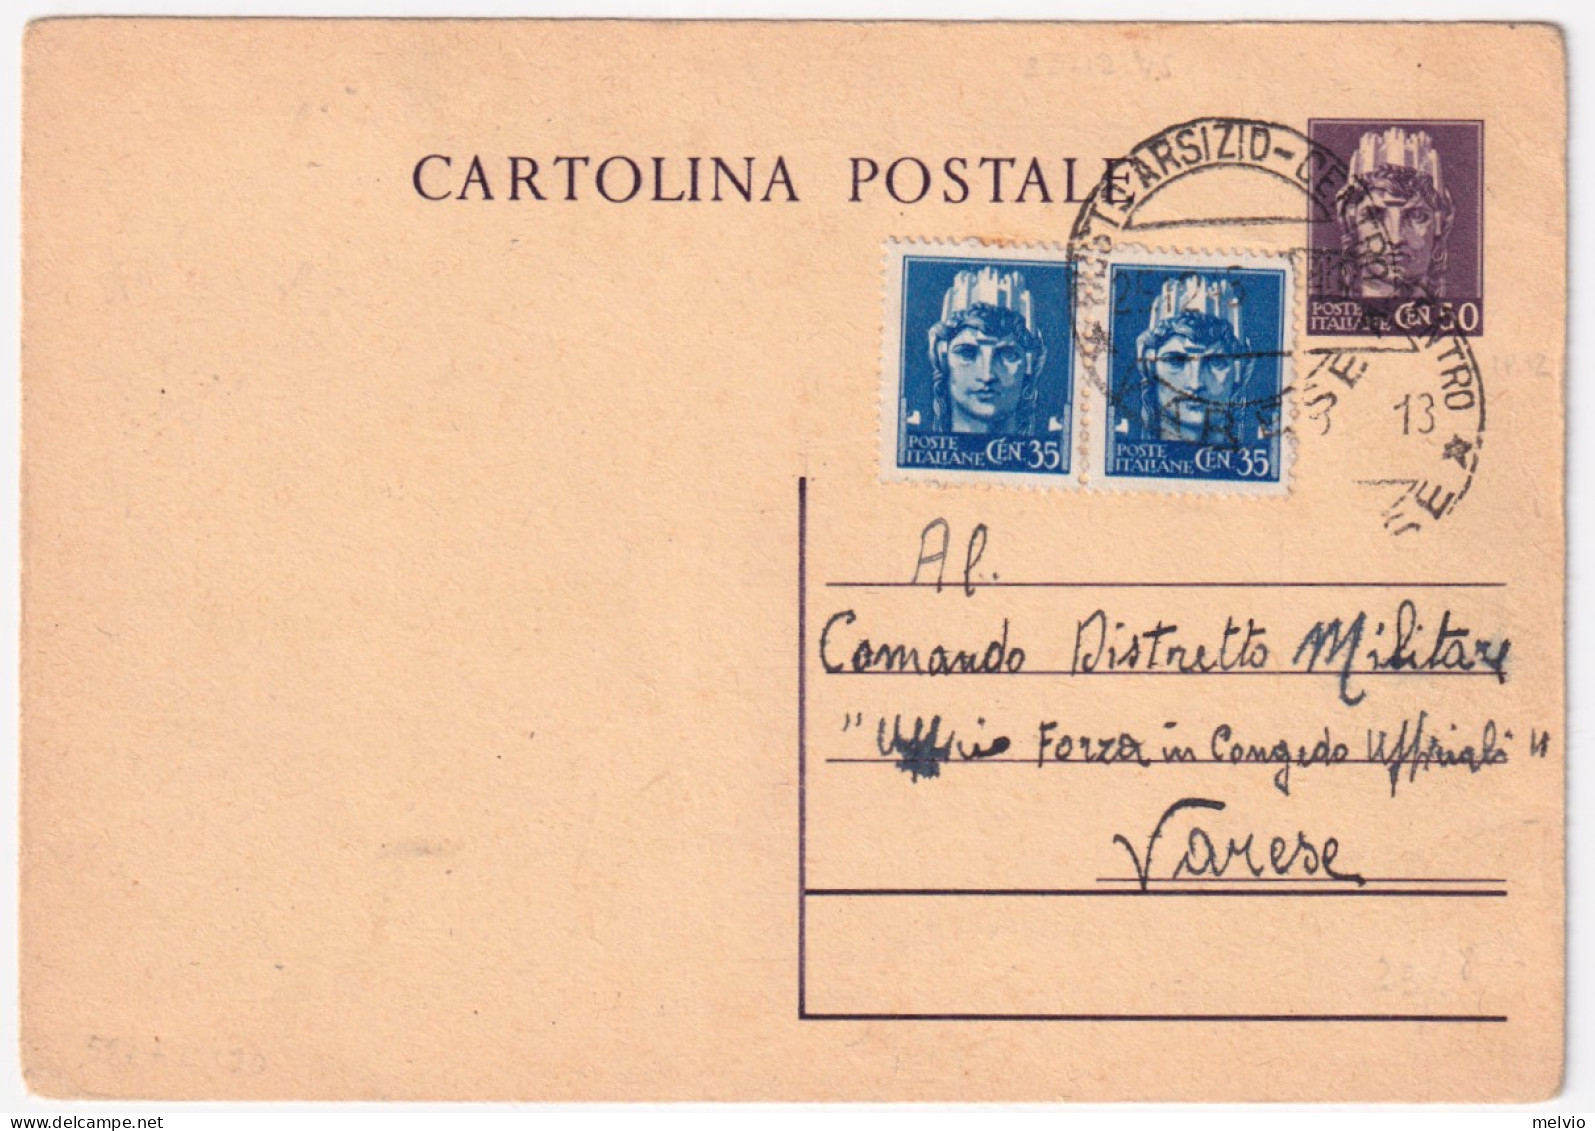 1945-Cartolina Postale C.50 (C120) Con Fr.lli Aggiunti Imperiale Senza Filigrana - Storia Postale